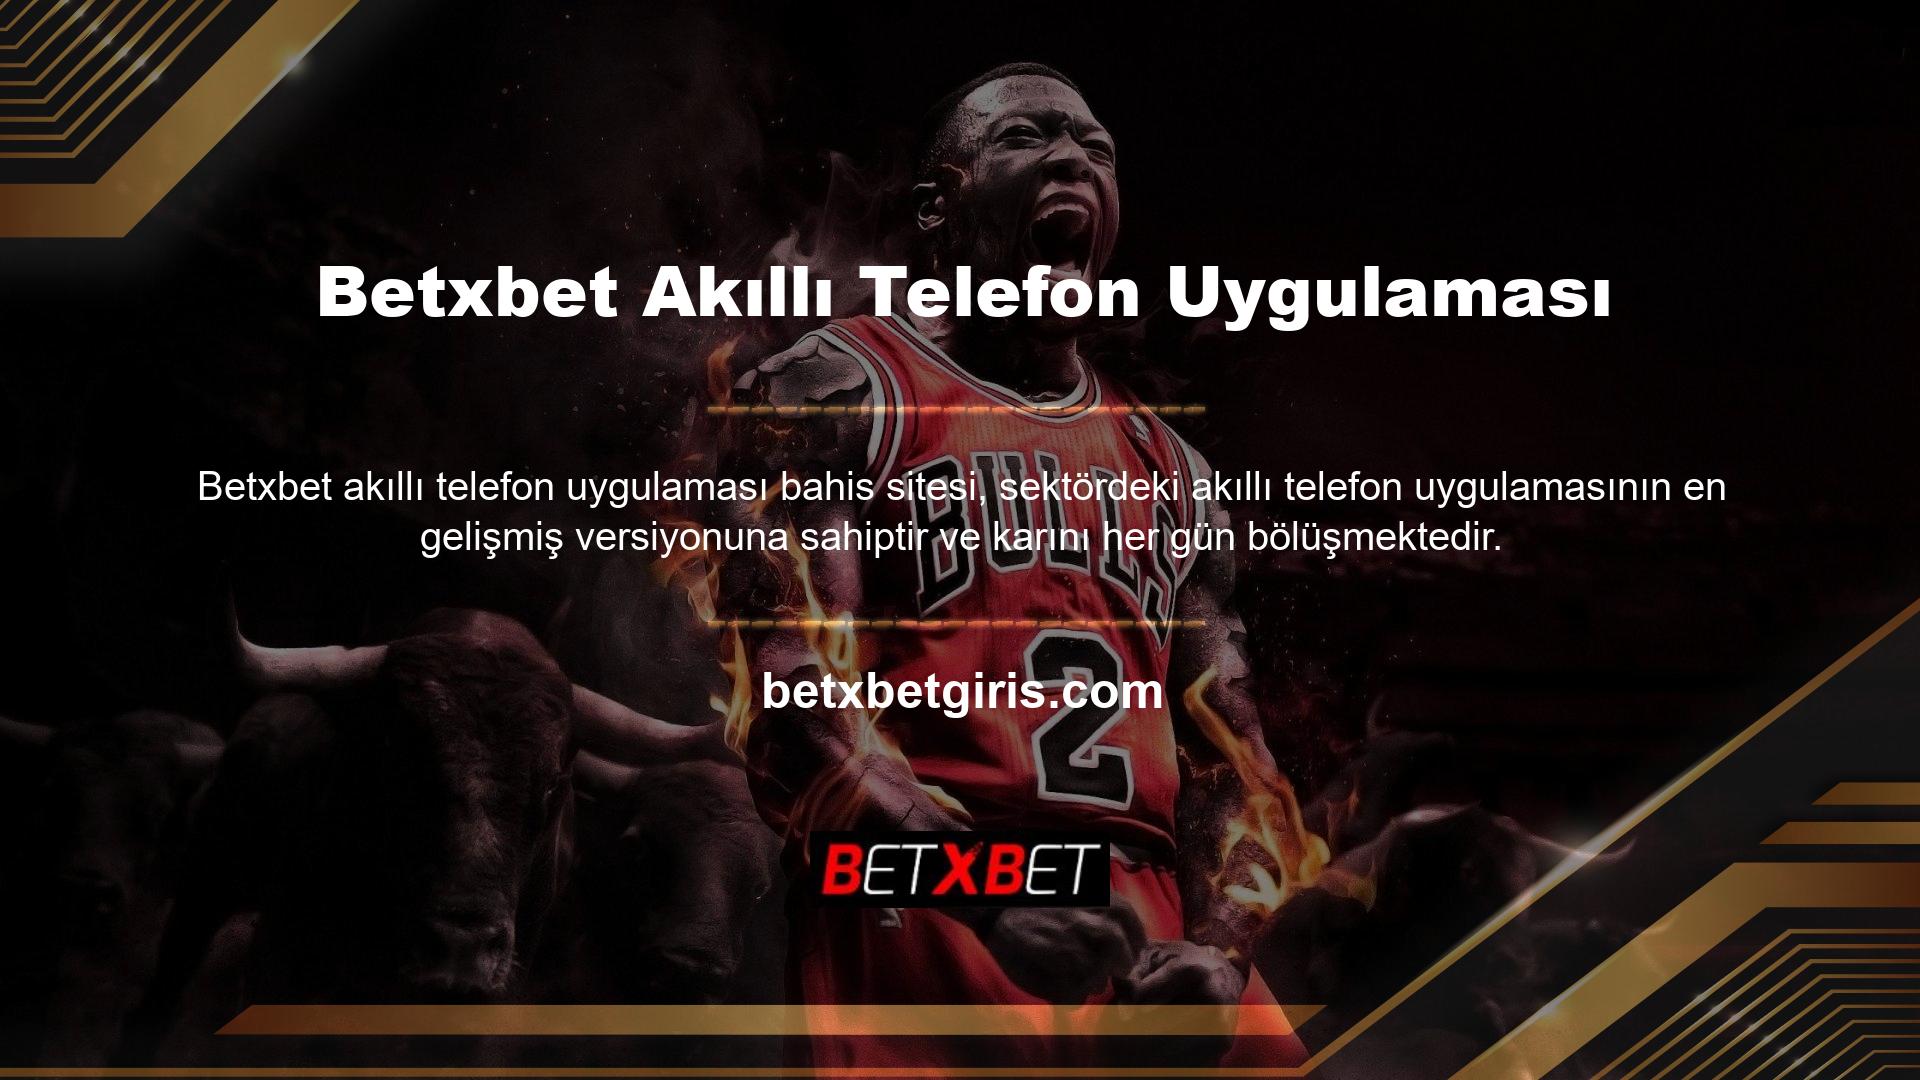 Betxbet, Türkiye'nin en ünlü casino sitelerinden biridir ve casino ve spor bahis programları ile hızlı bir deneyim vaat etmektedir